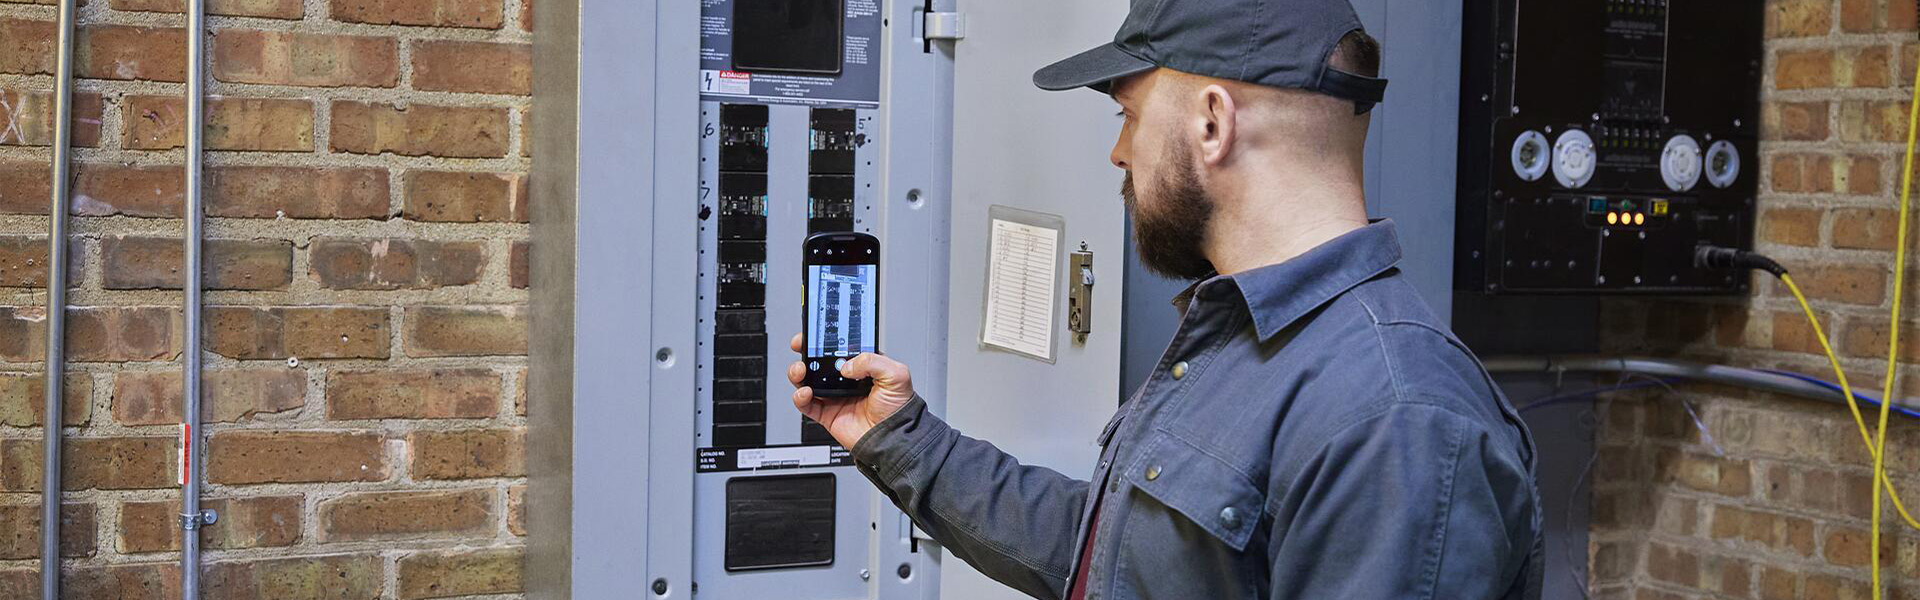 Servicetechniker macht ein Foto mit einem Mobilcomputer von einem Stromkasten